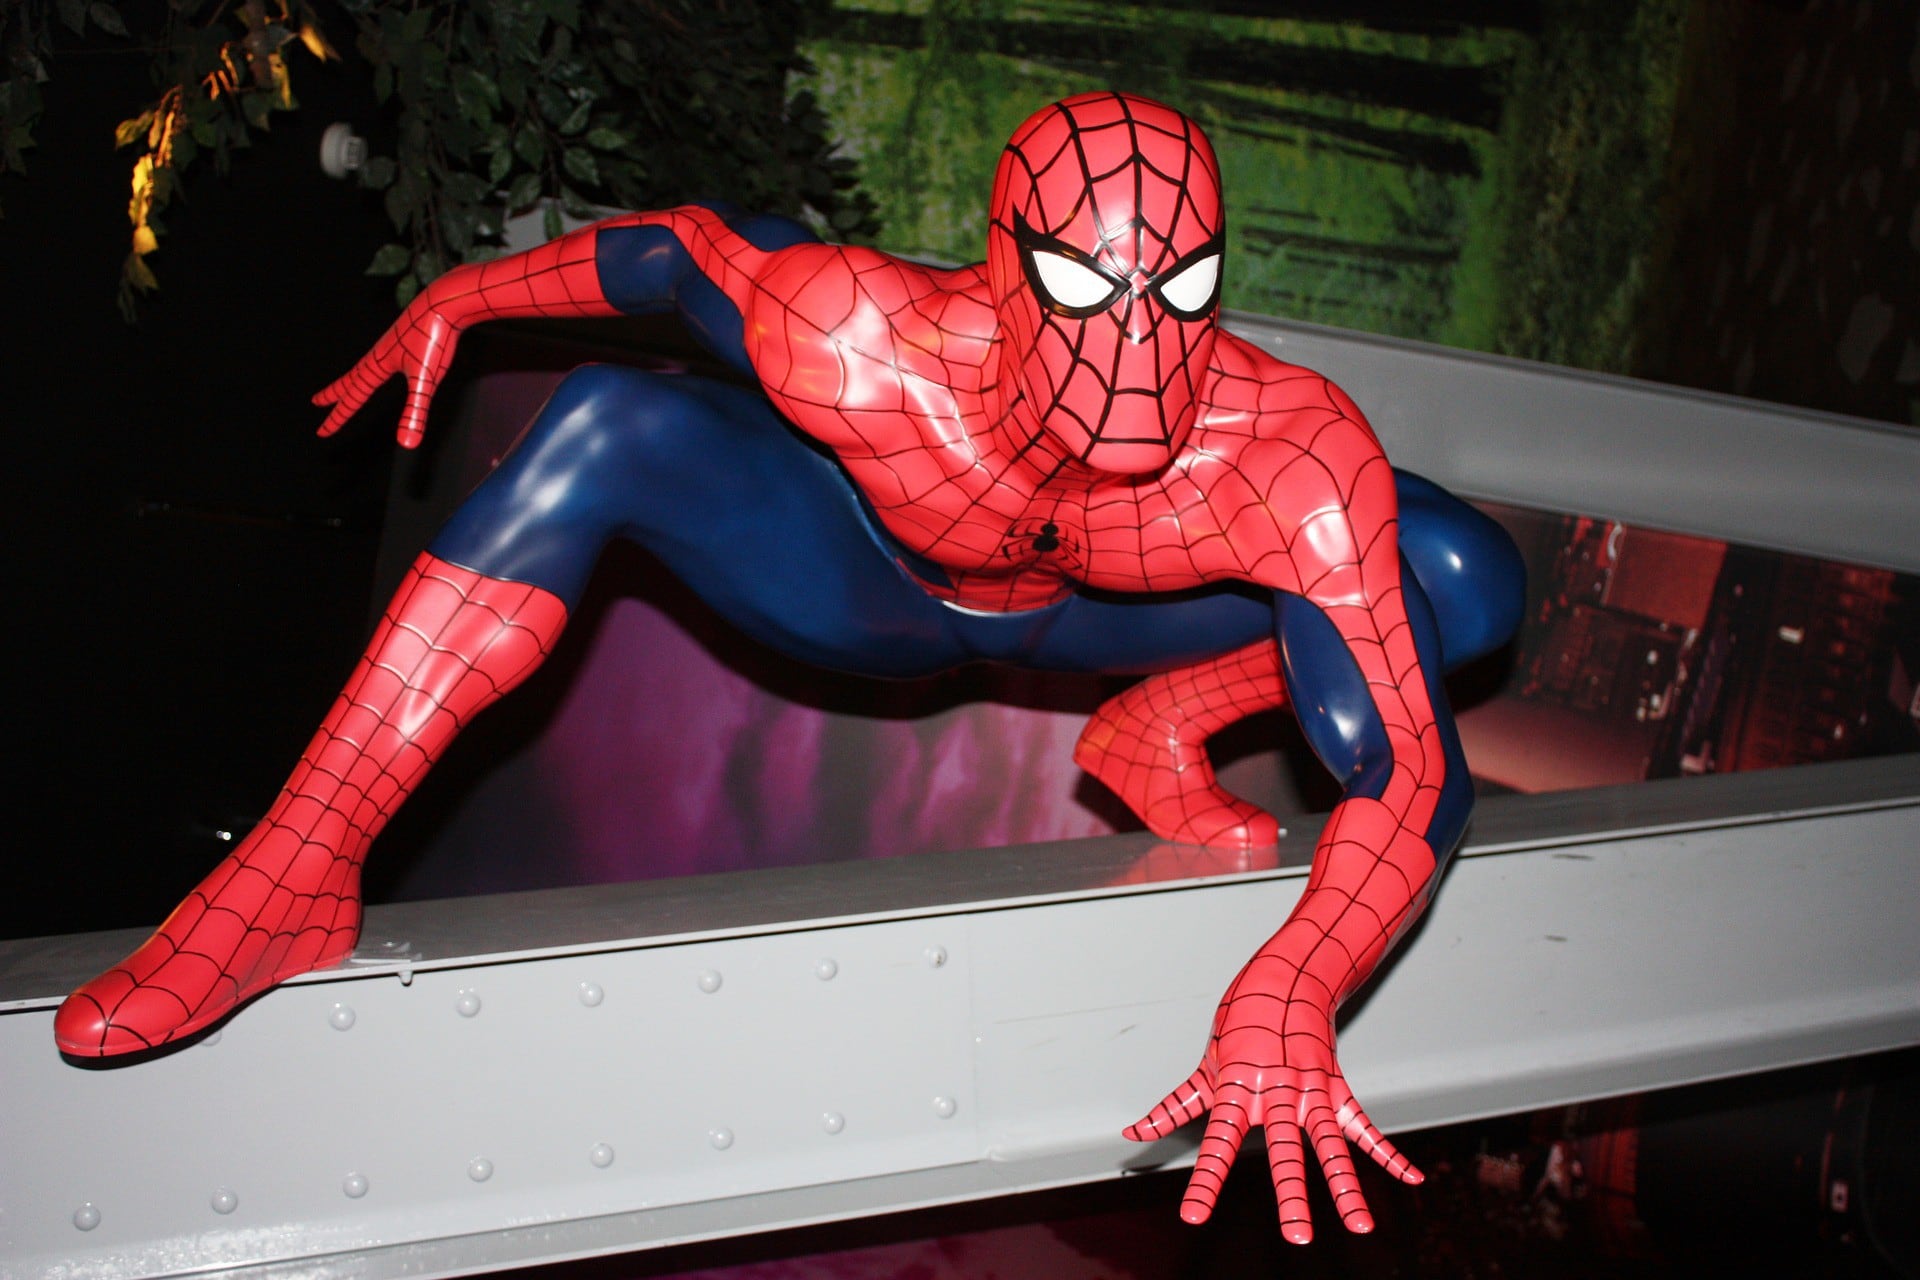 Los niños quisieron imitar a Peter Parker y convertirse en el "Hombre Araña". (Foto referencial: Pixabay)